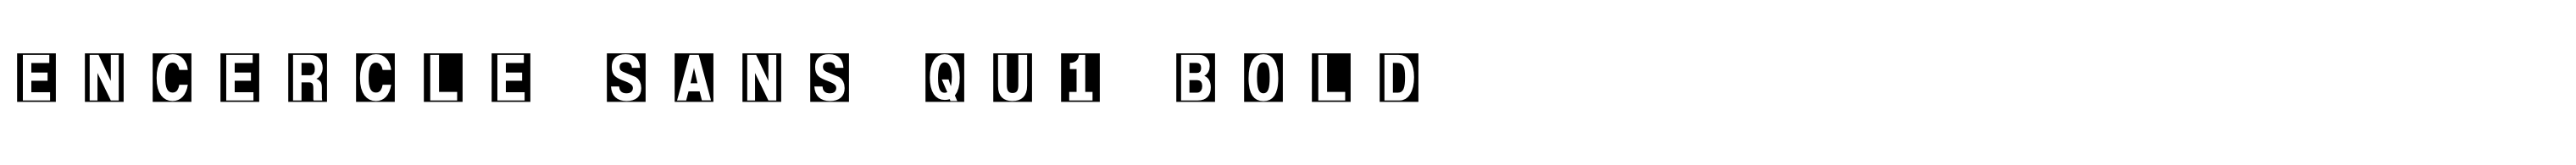 Encercle Sans Qu1 Bold